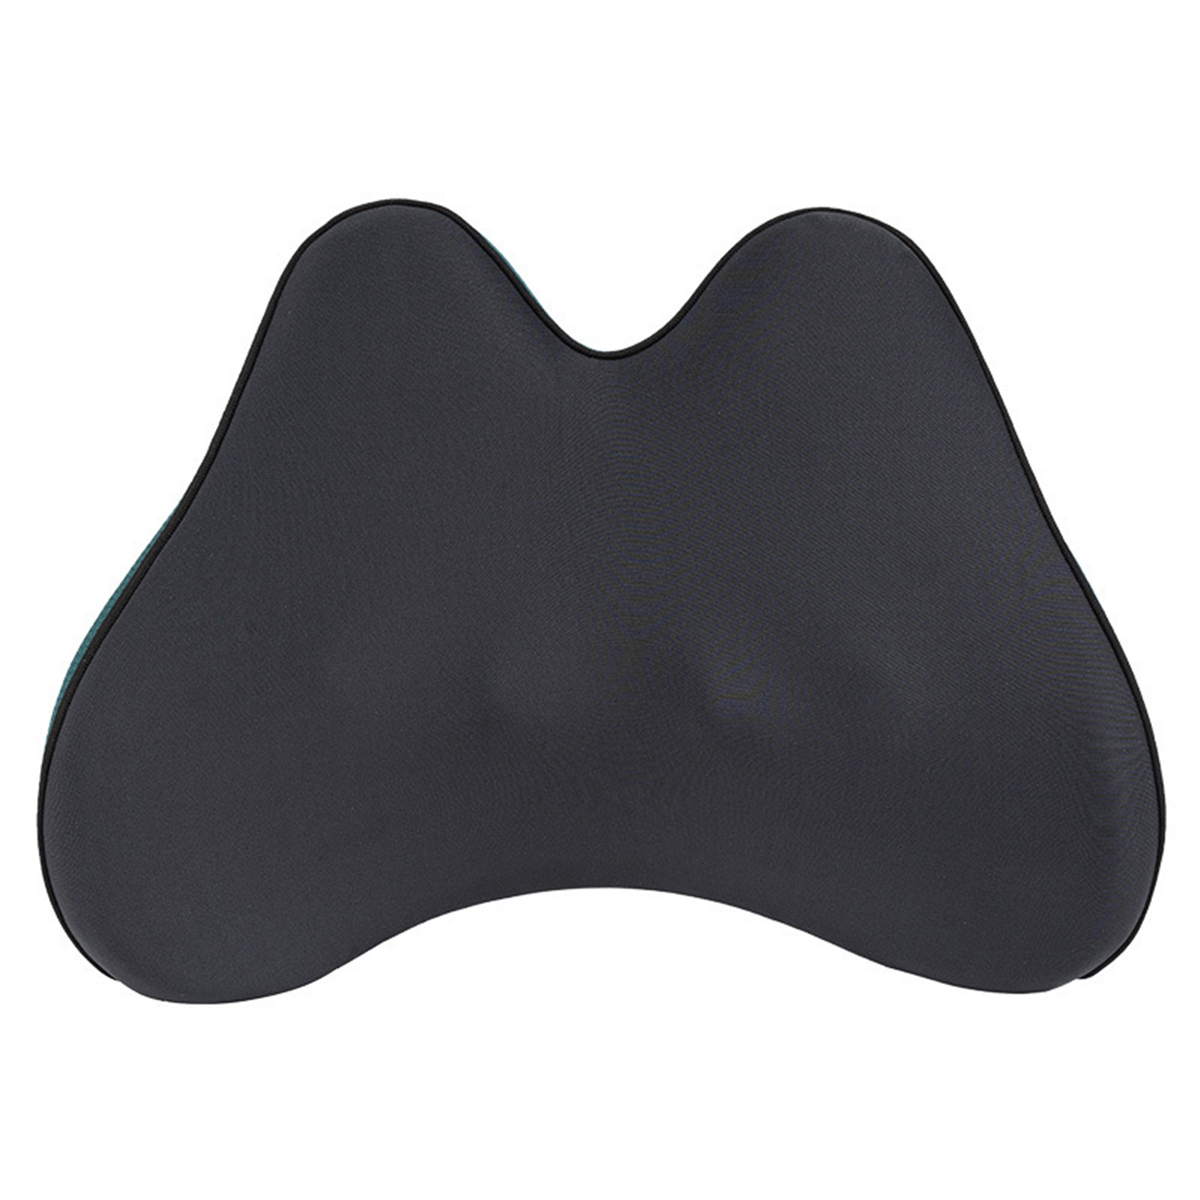 und SHAOKE - pur Rücken- - Multifunktionaler Massagegerät Entspannung Nackenmassagegürtel Wärmetherapie